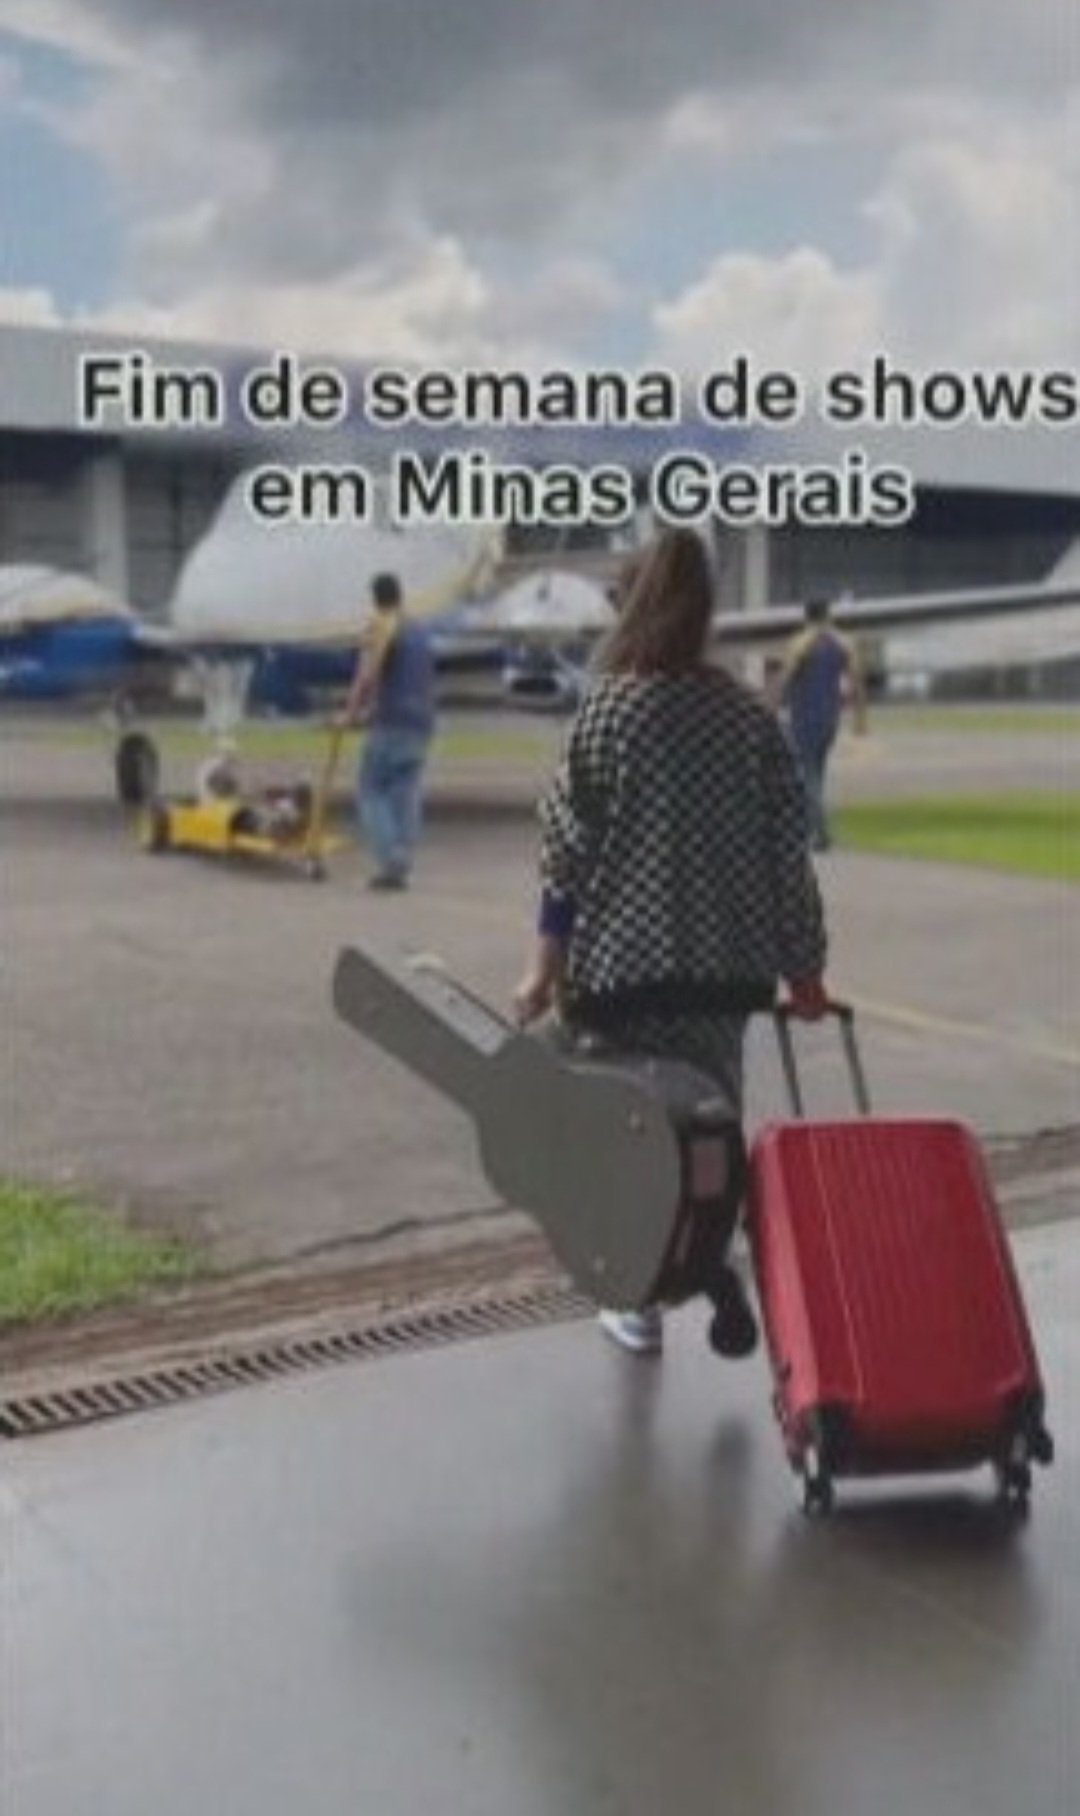 Antes do embarque no avião onde morreria, a cantora postou fotos avisando que estava a caminho de shows em Minas Gerais. 